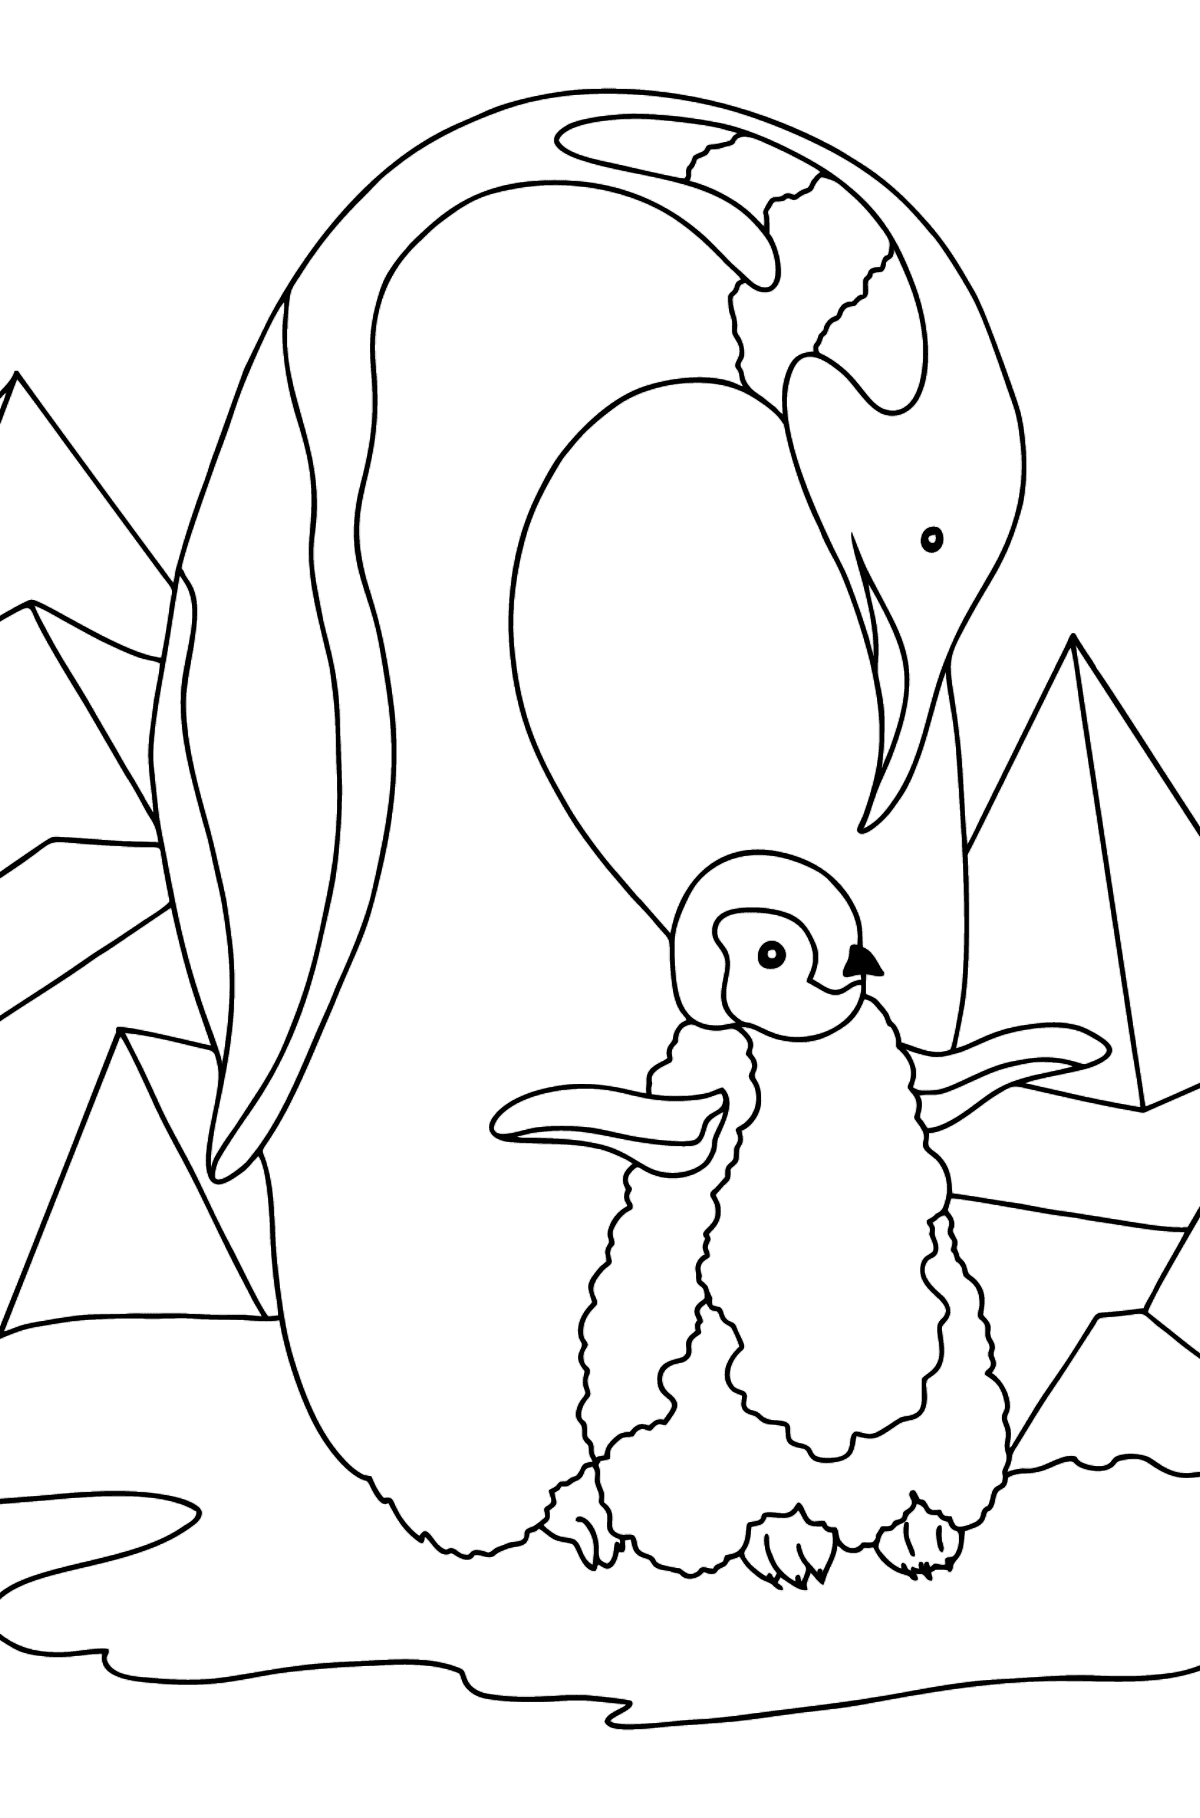 Desenho de pinguim para colorir (difícil) - Imagens para Colorir para Crianças